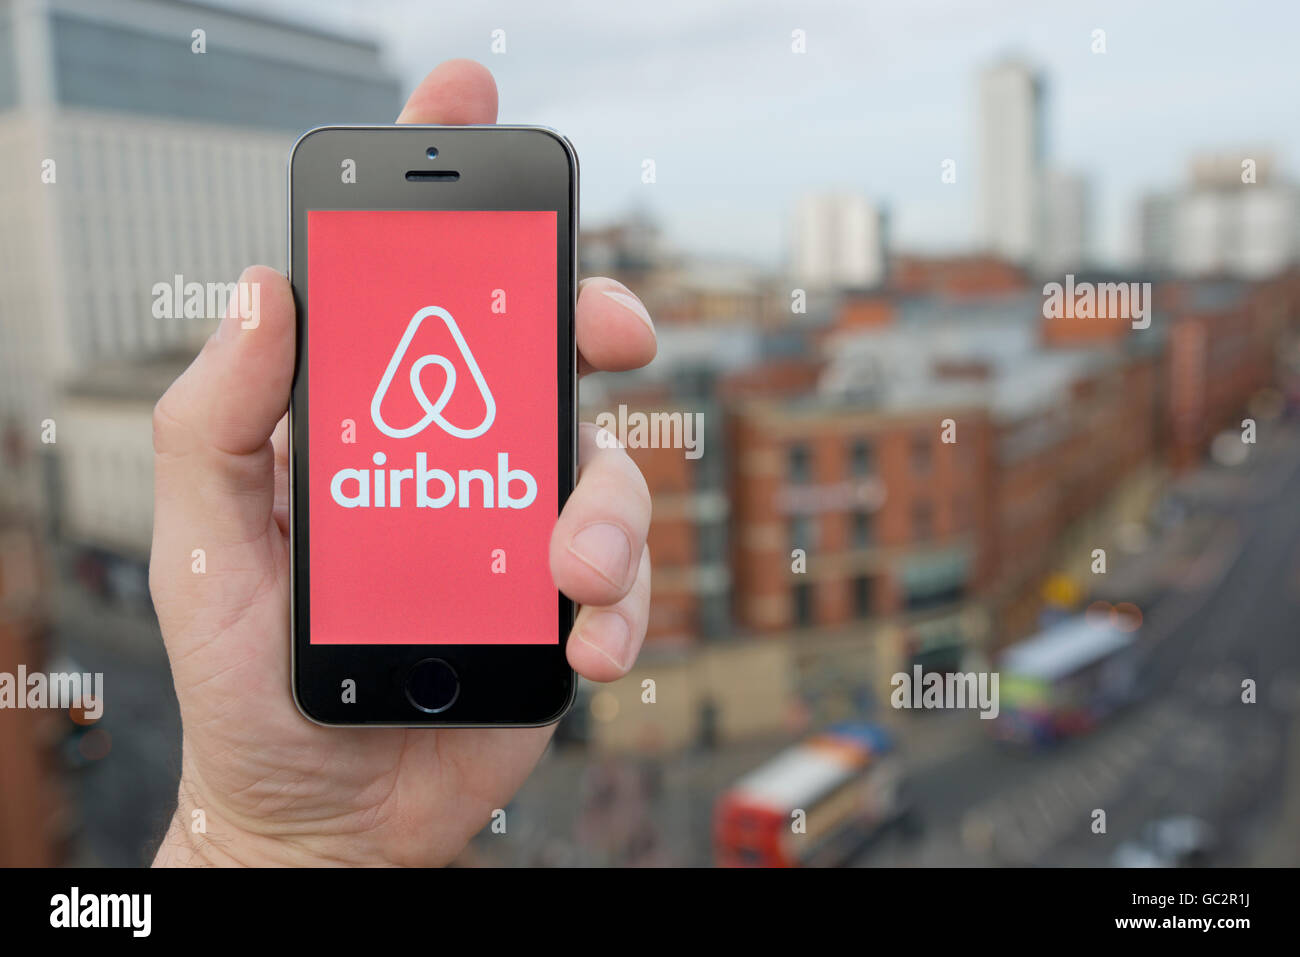 Un homme utilise l'application pour smartphone Airbnb tandis que se tenait dans un grand bâtiment donnant sur une rue bondée (usage éditorial uniquement) Banque D'Images